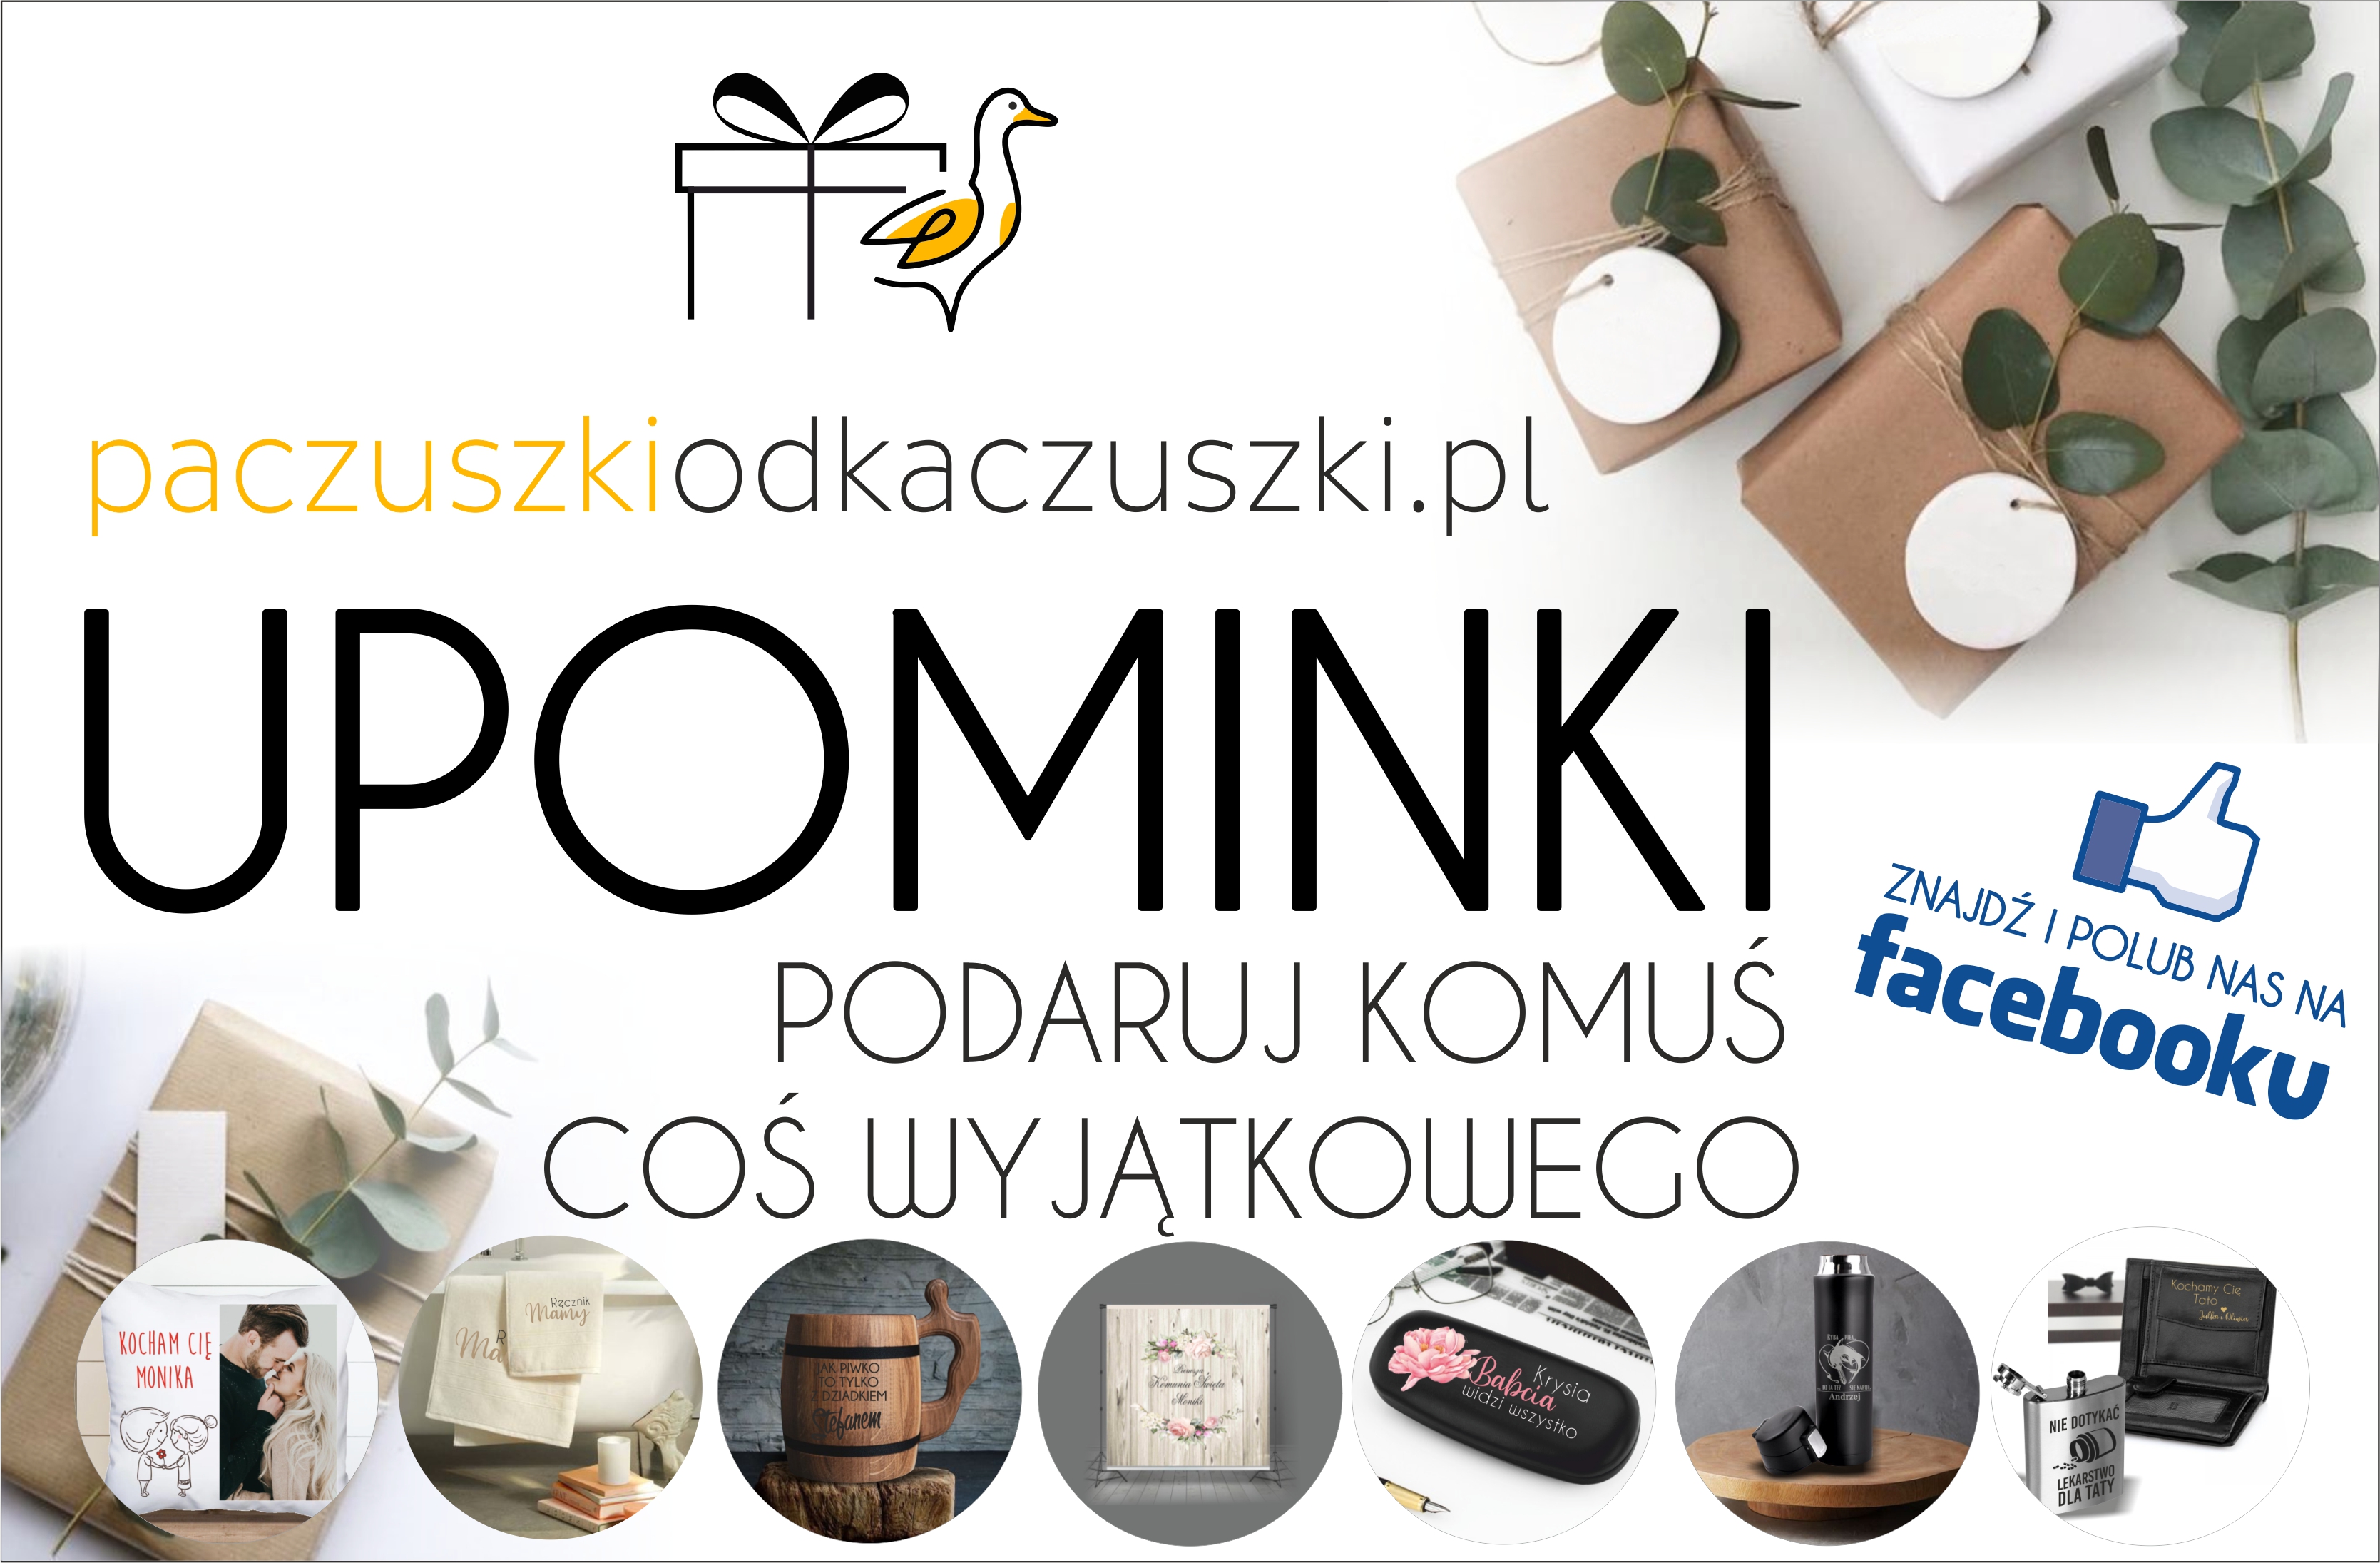 www.paczuszkiodkaczuszki.pl